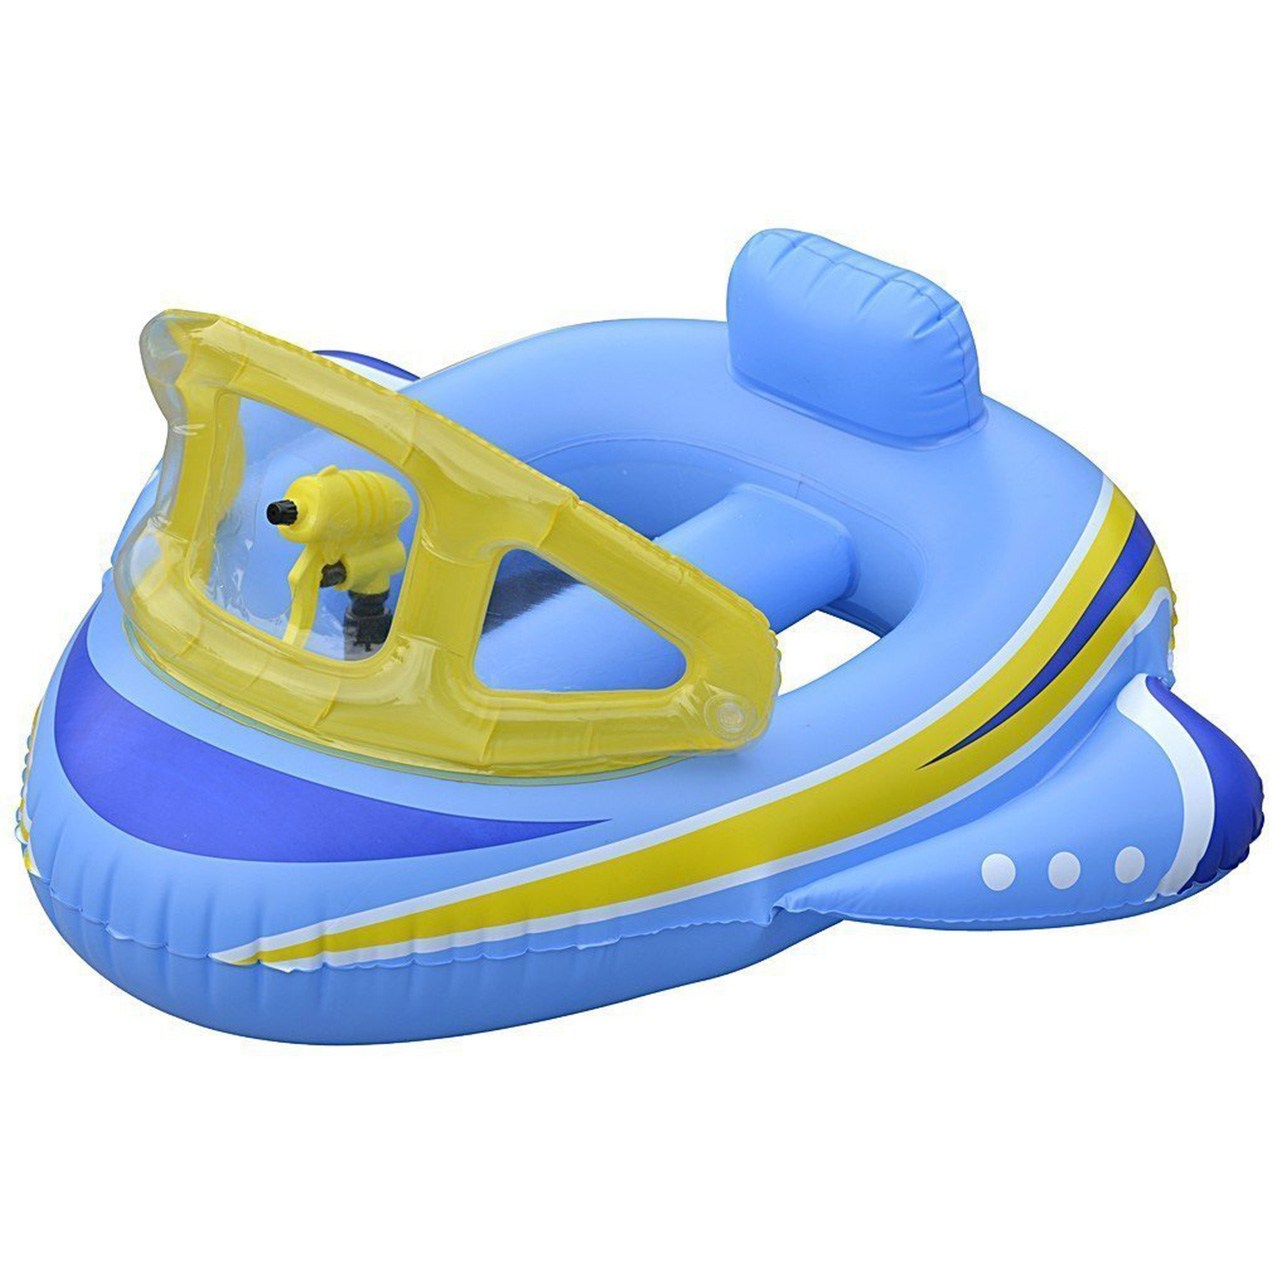 وسیله کمک آموزشی شنای کودک جیلانگ مدل Airship Rider